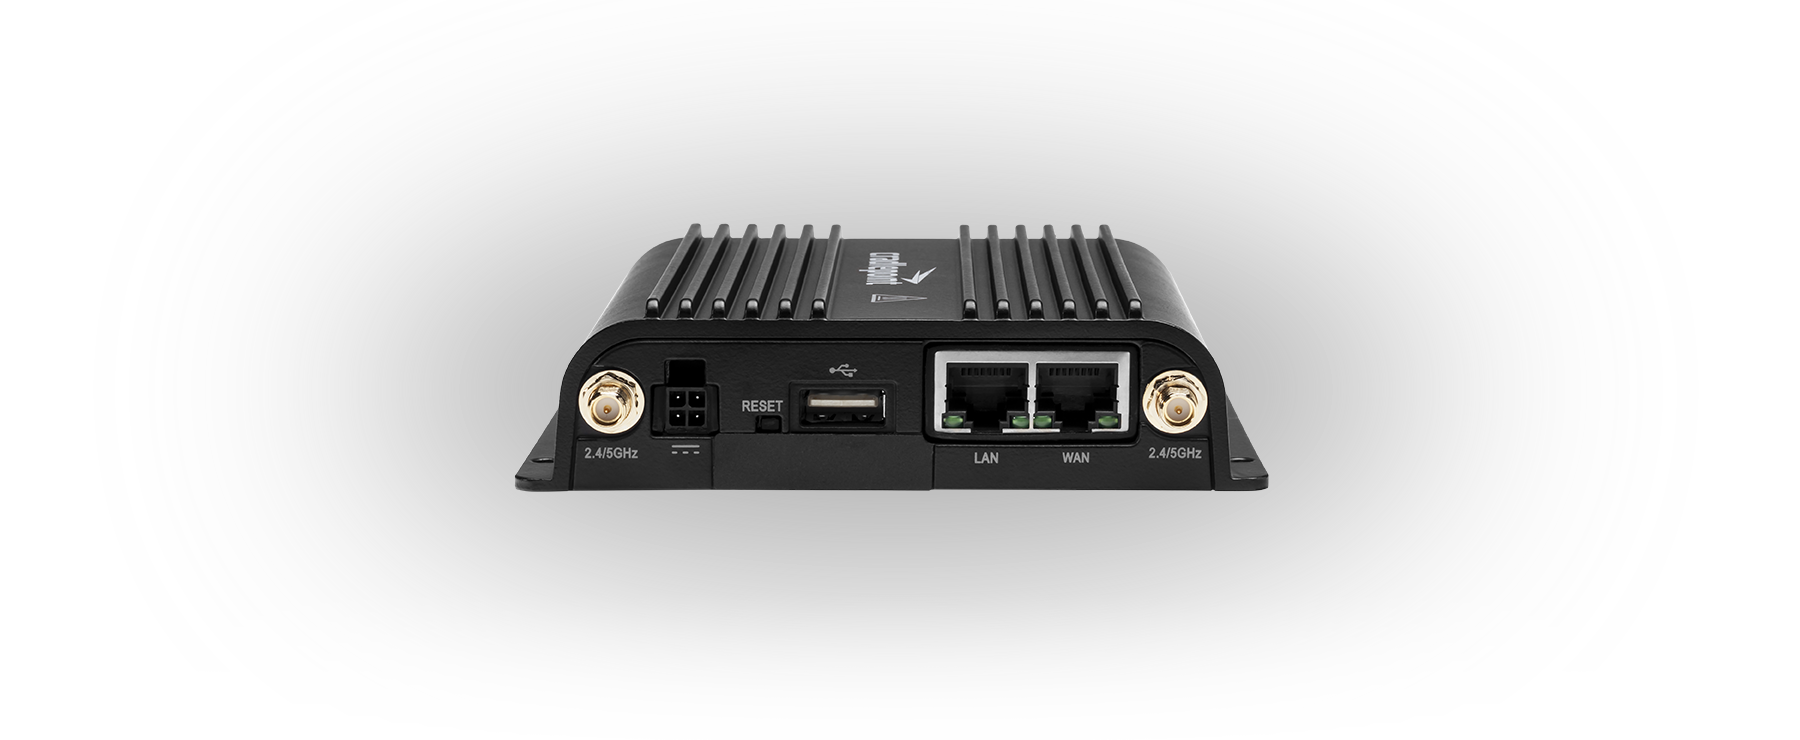 E300 Series Enterprise Router, Endpoints, NetCloud Equipment